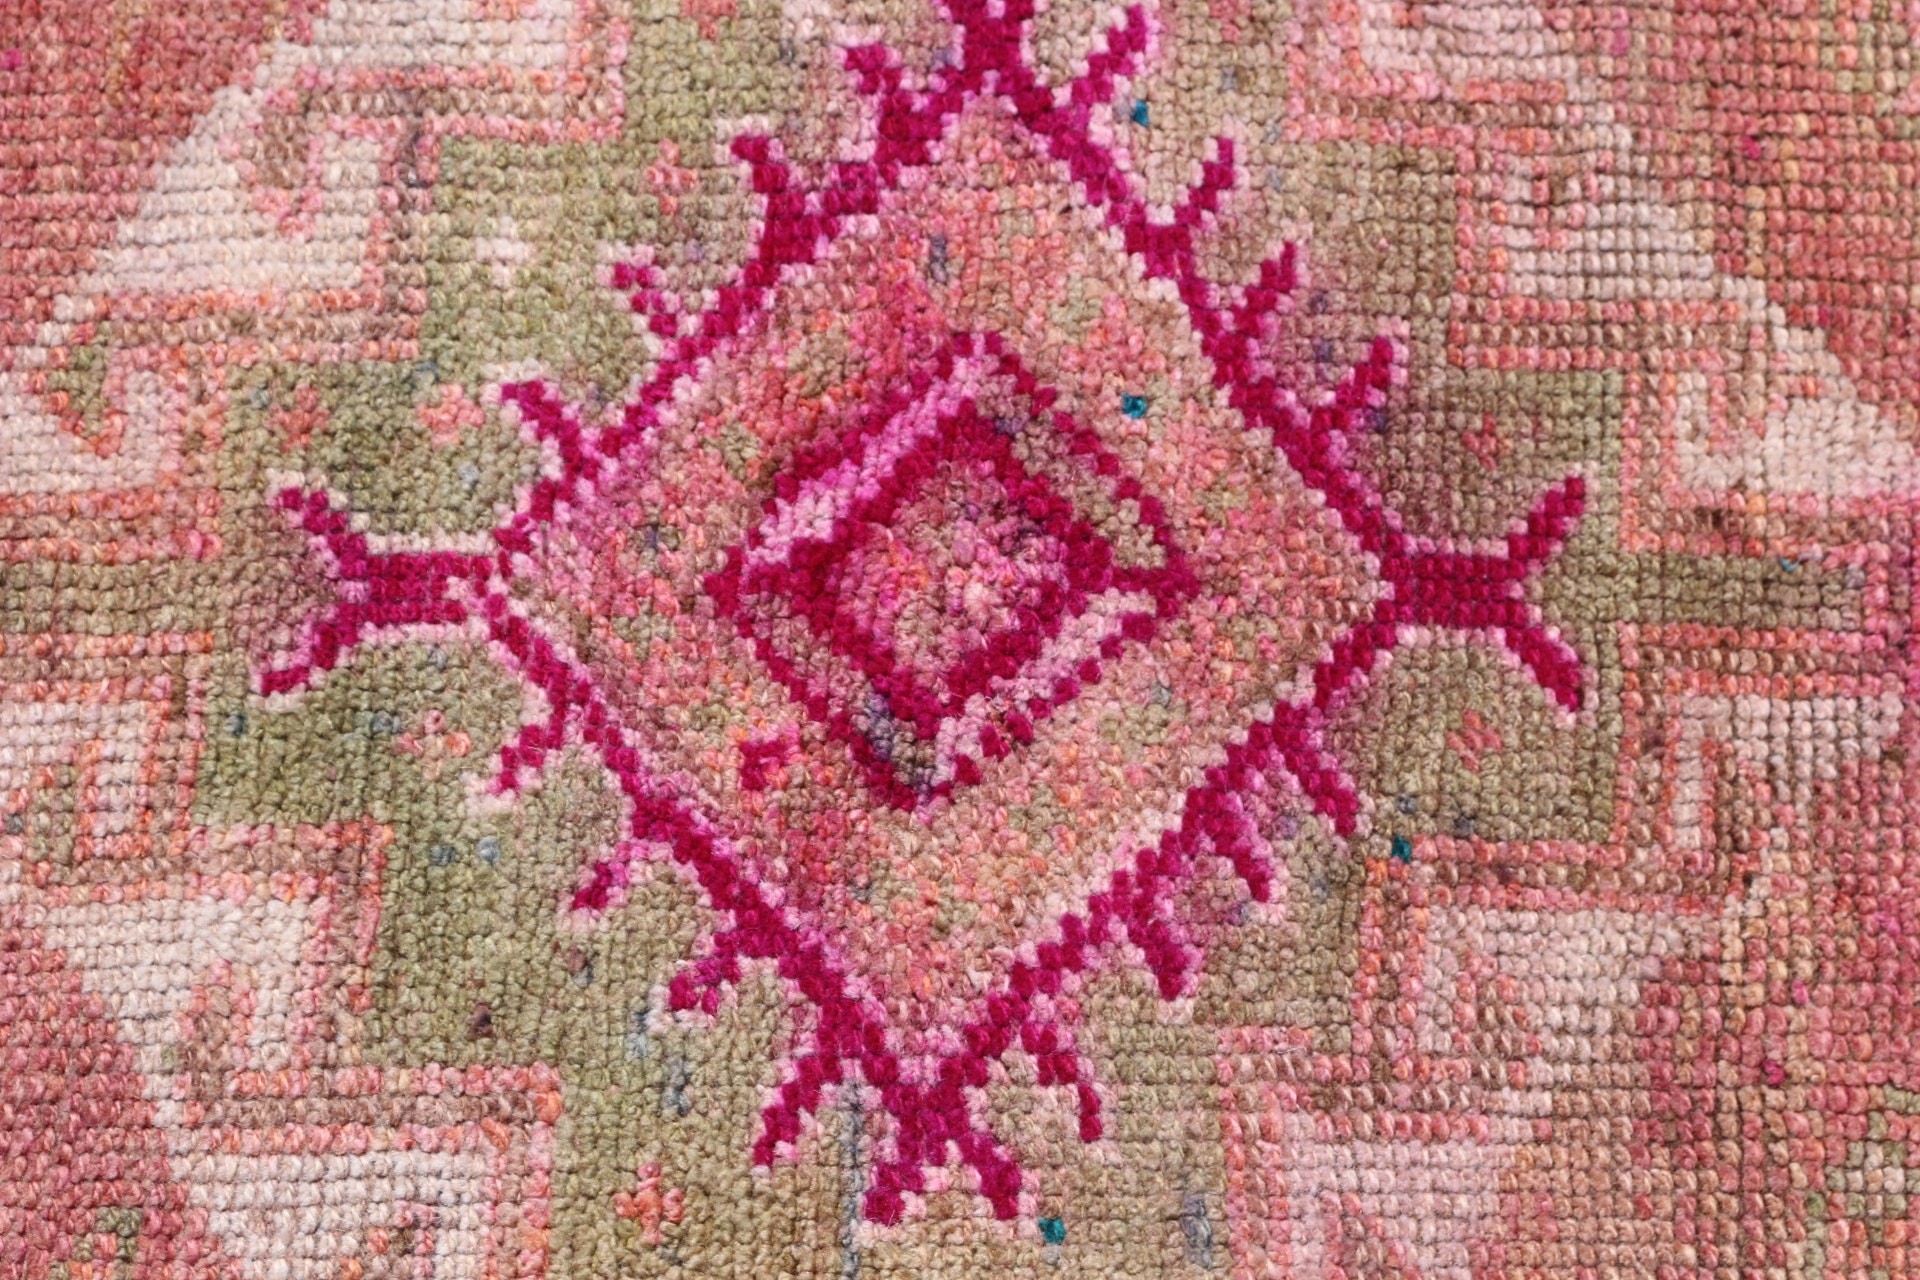 Cool Rug, Vintage Rugs, Pink Floor Rugs, Home Decor Rug, 2.8x11.1 ft Runner Rugs, Turkish Rugs, Rugs for Runner, Dorm Rugs, Hallway Rug